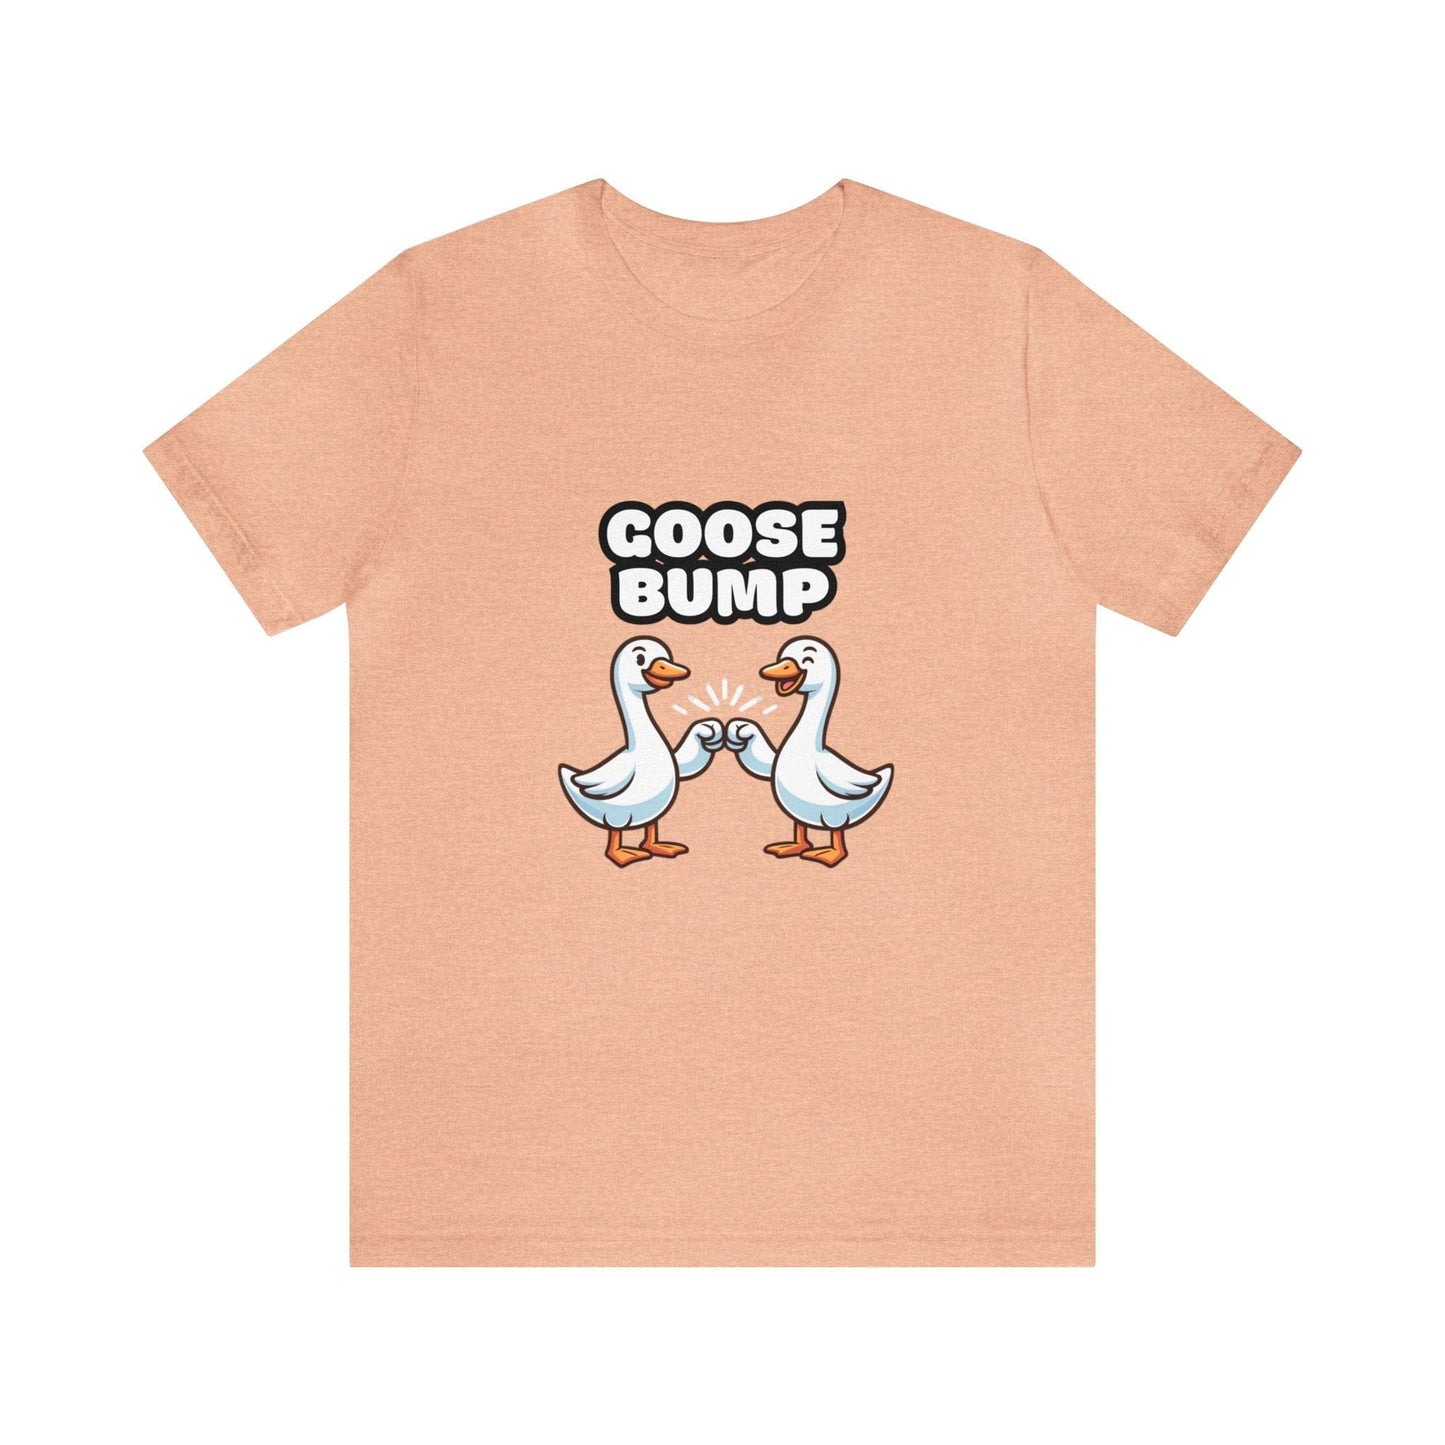 US - Goose Bump - Goose T-shirt Heather Peach / S